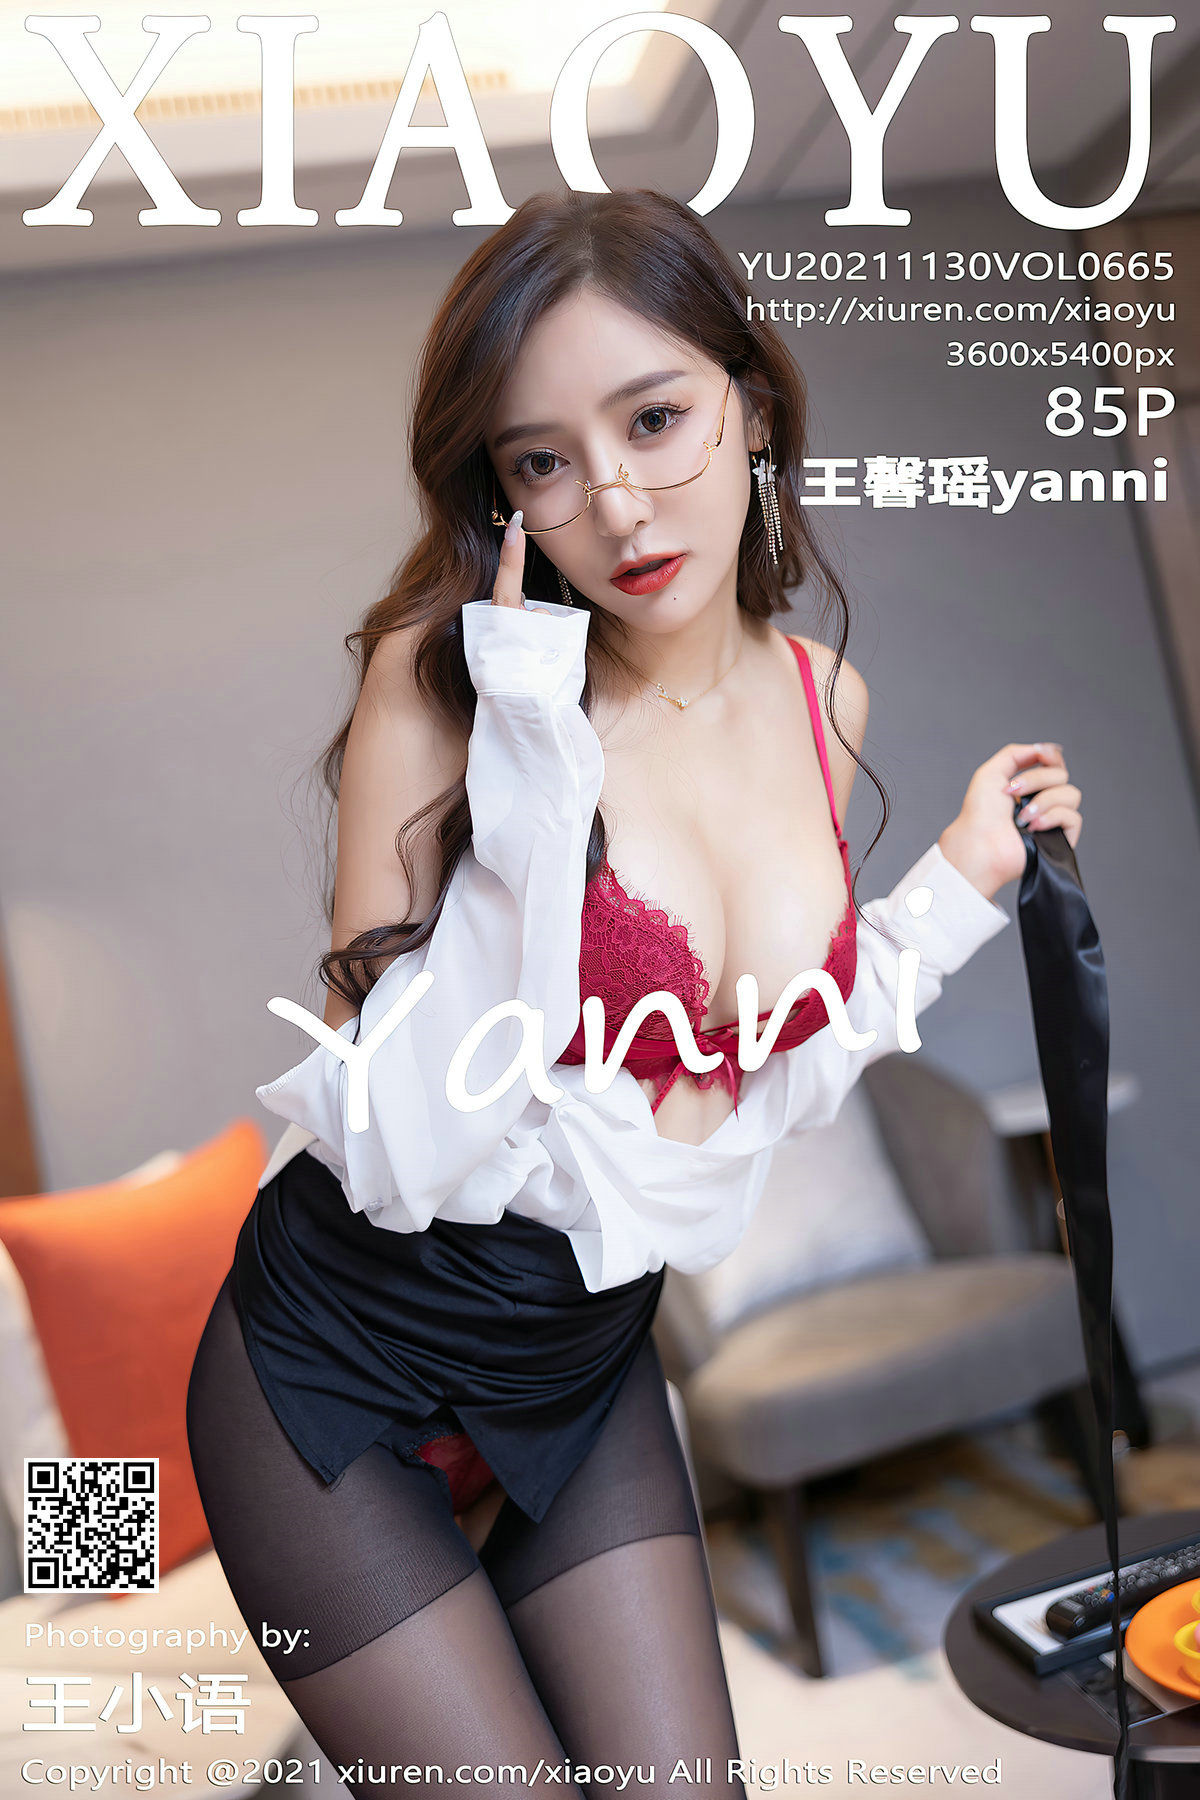 [语画界XIAOYU] Vol.665 王馨瑶yanni